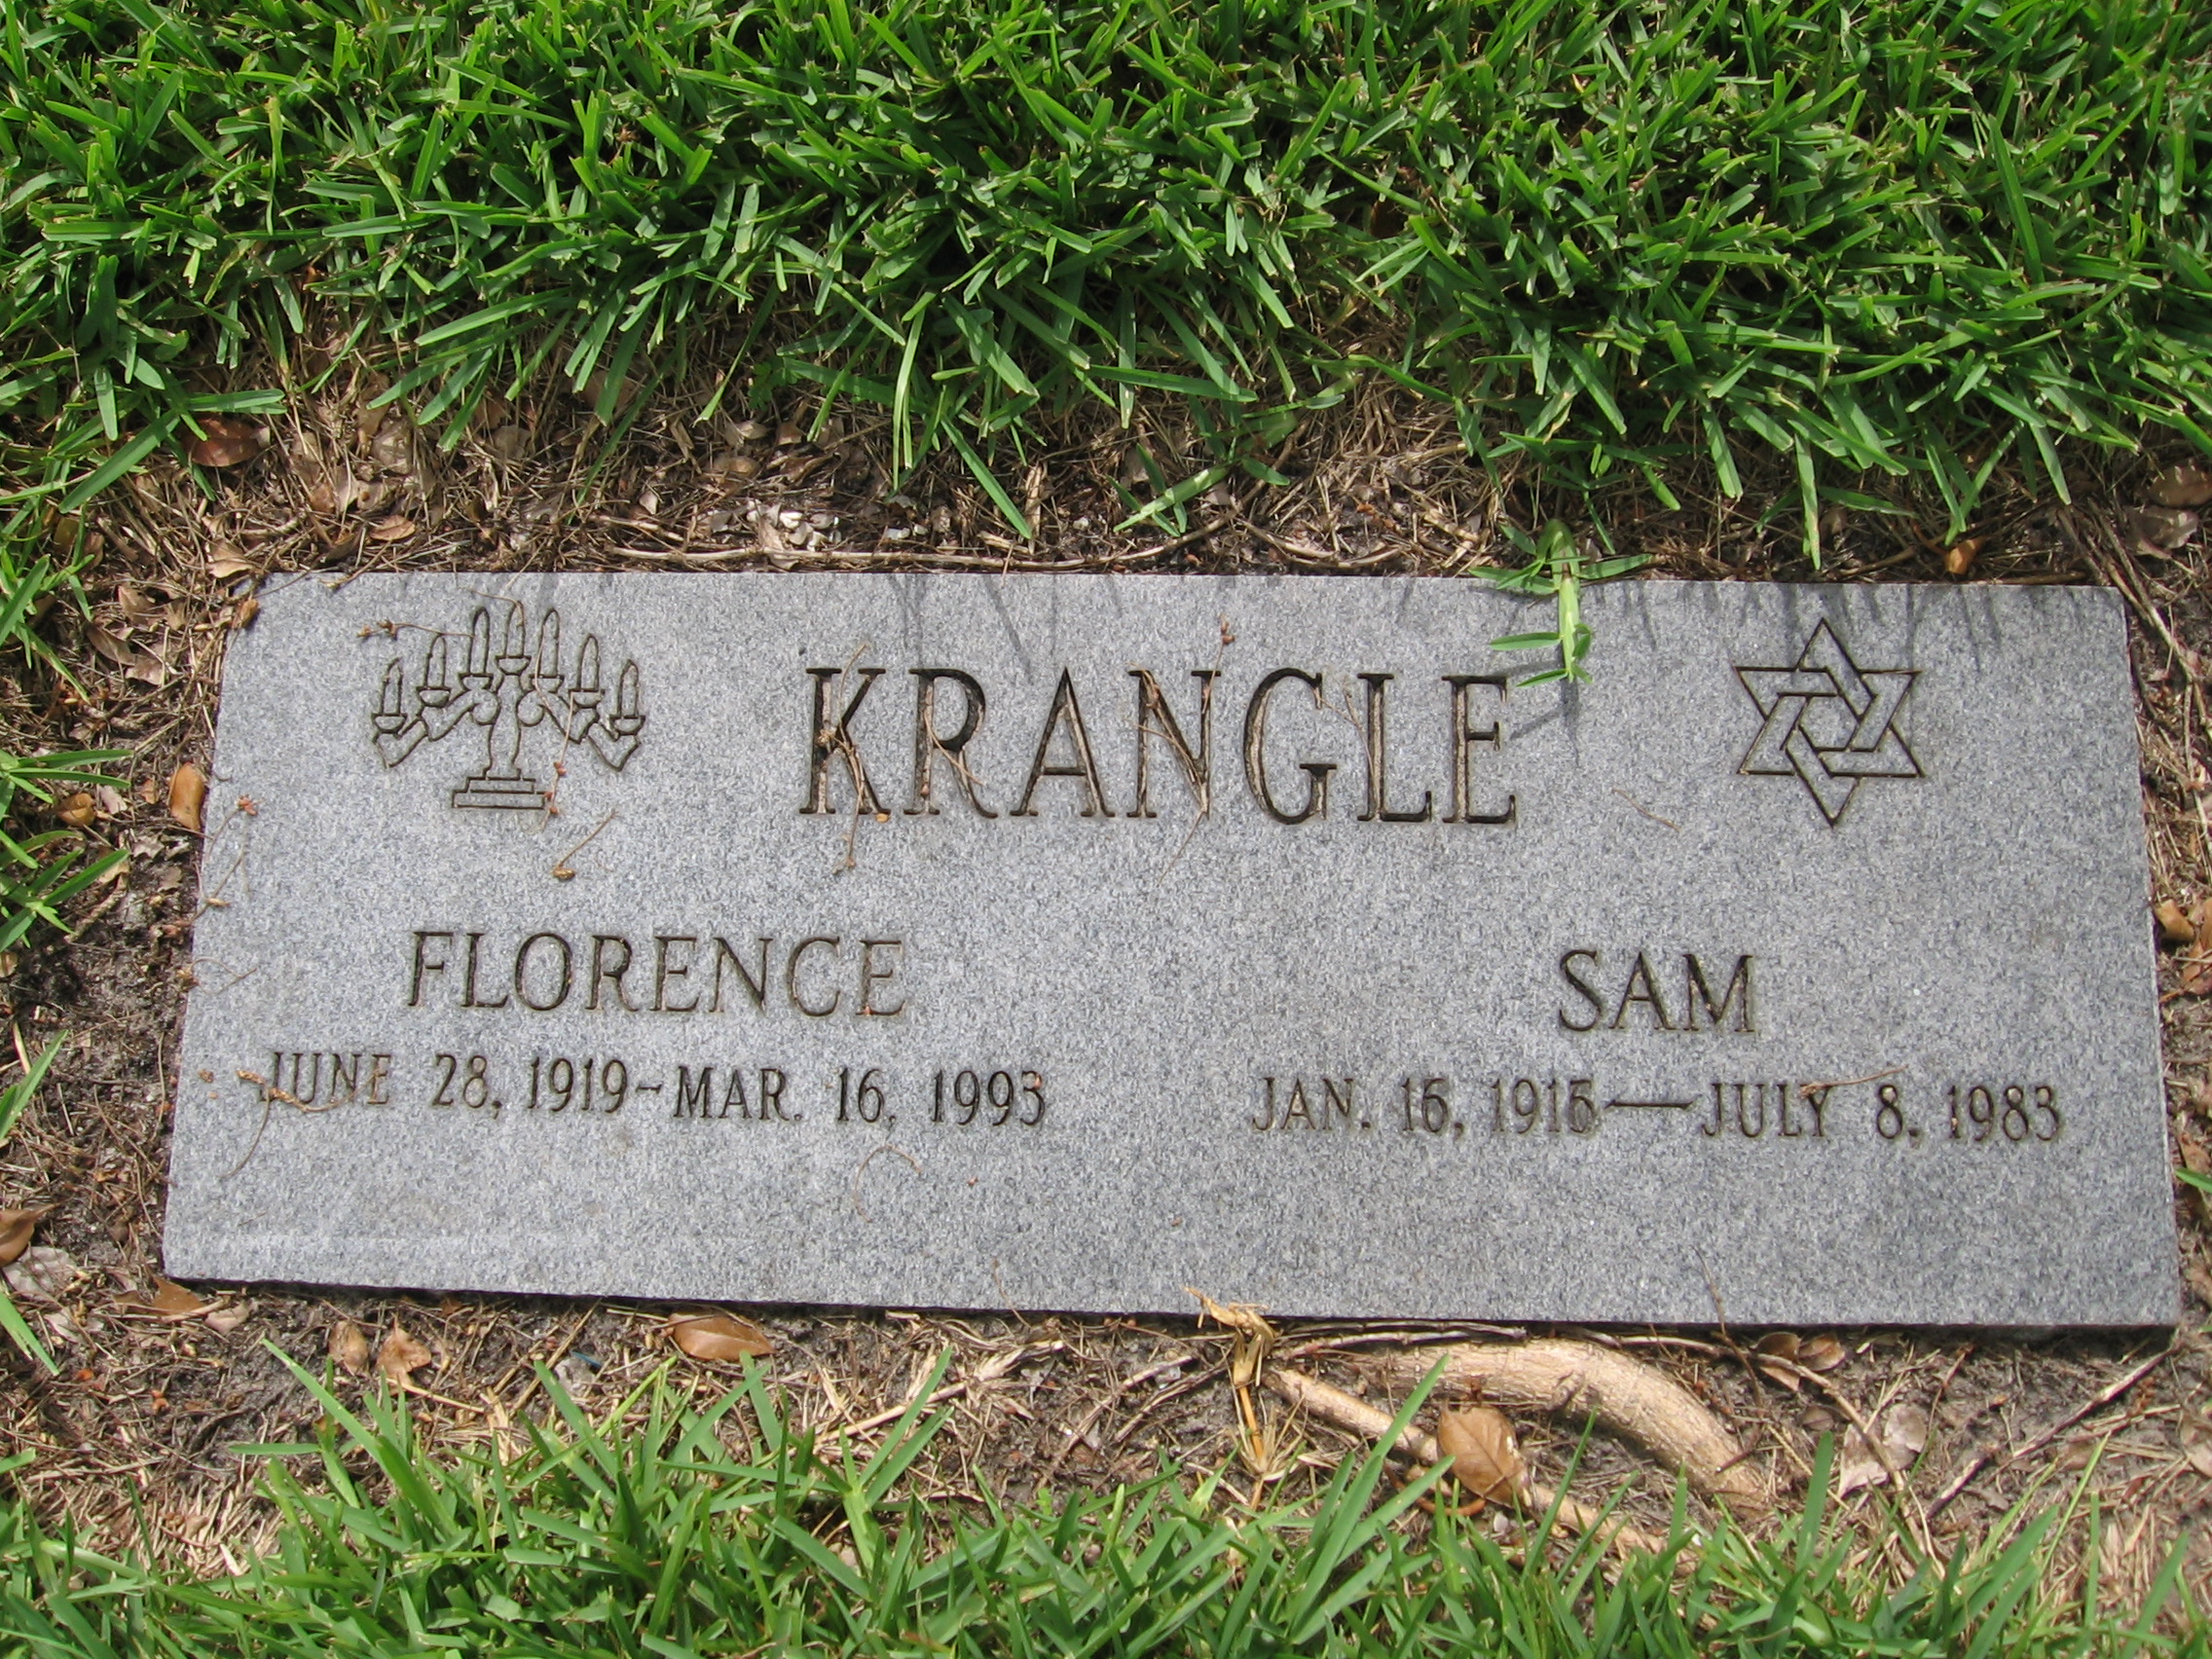 Sam Krangle